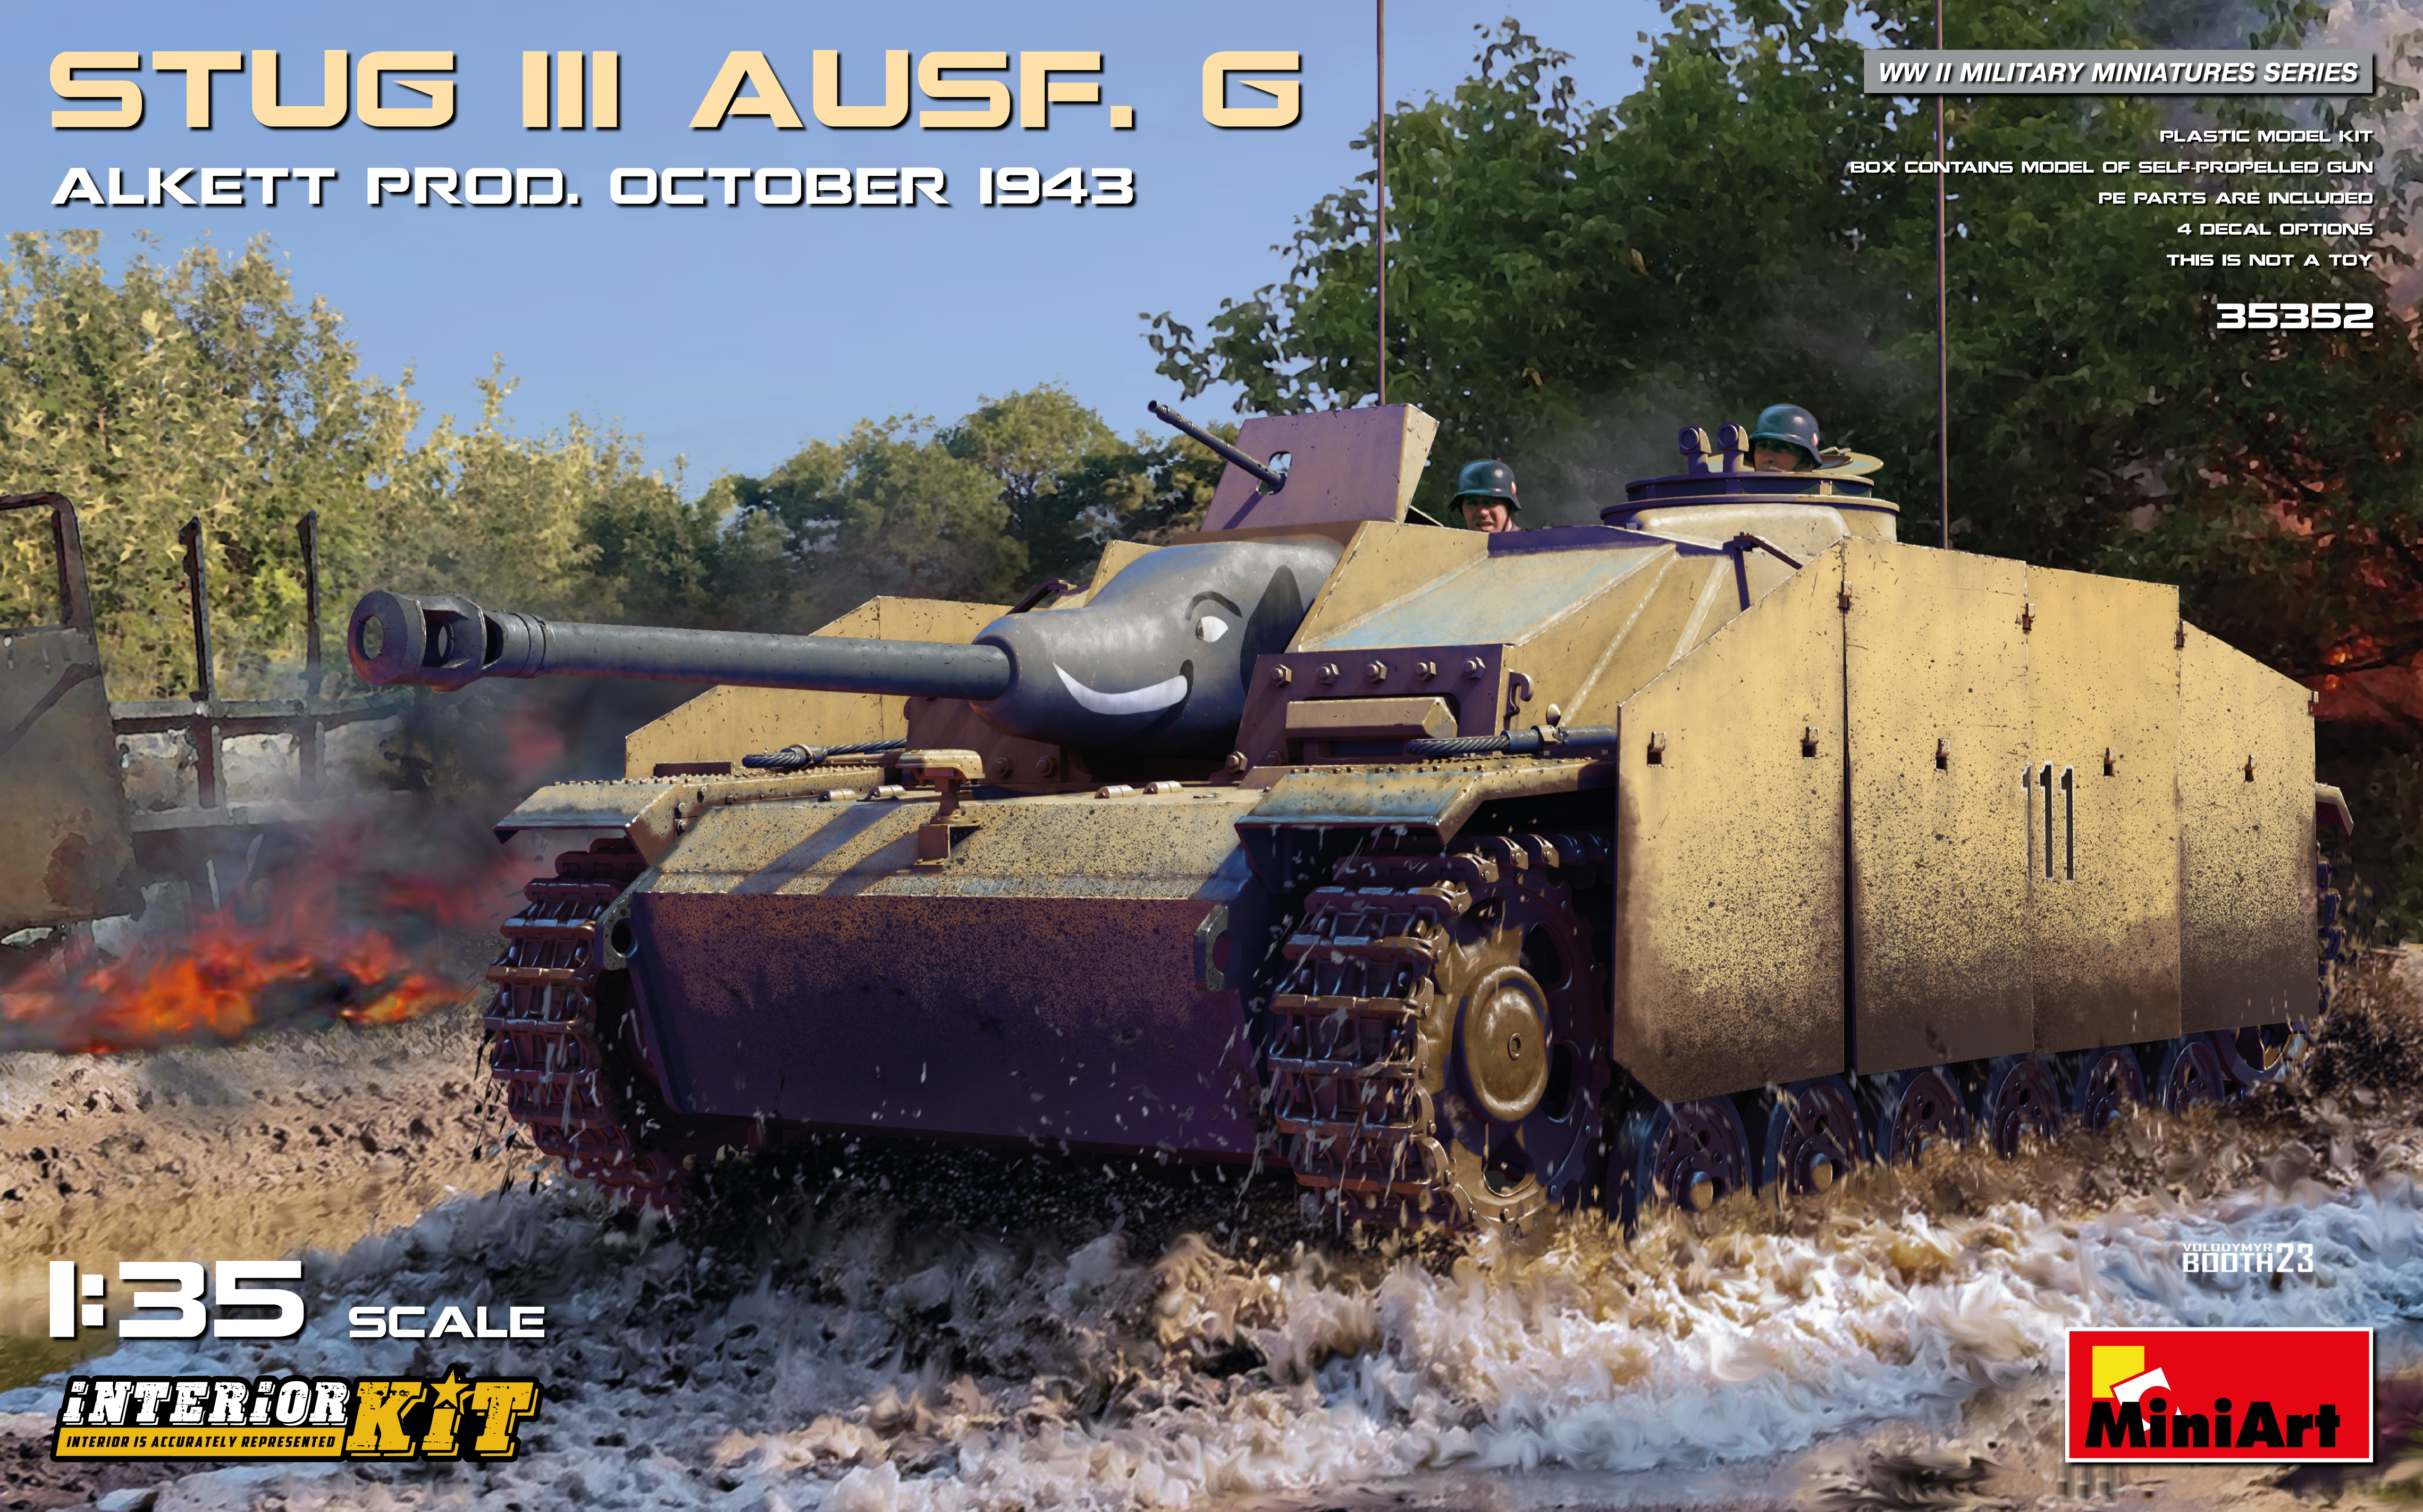 【予約する】　1/35　Ⅲ号突撃砲Ausf.G 1943年10月アルケット社製 フルインテリア